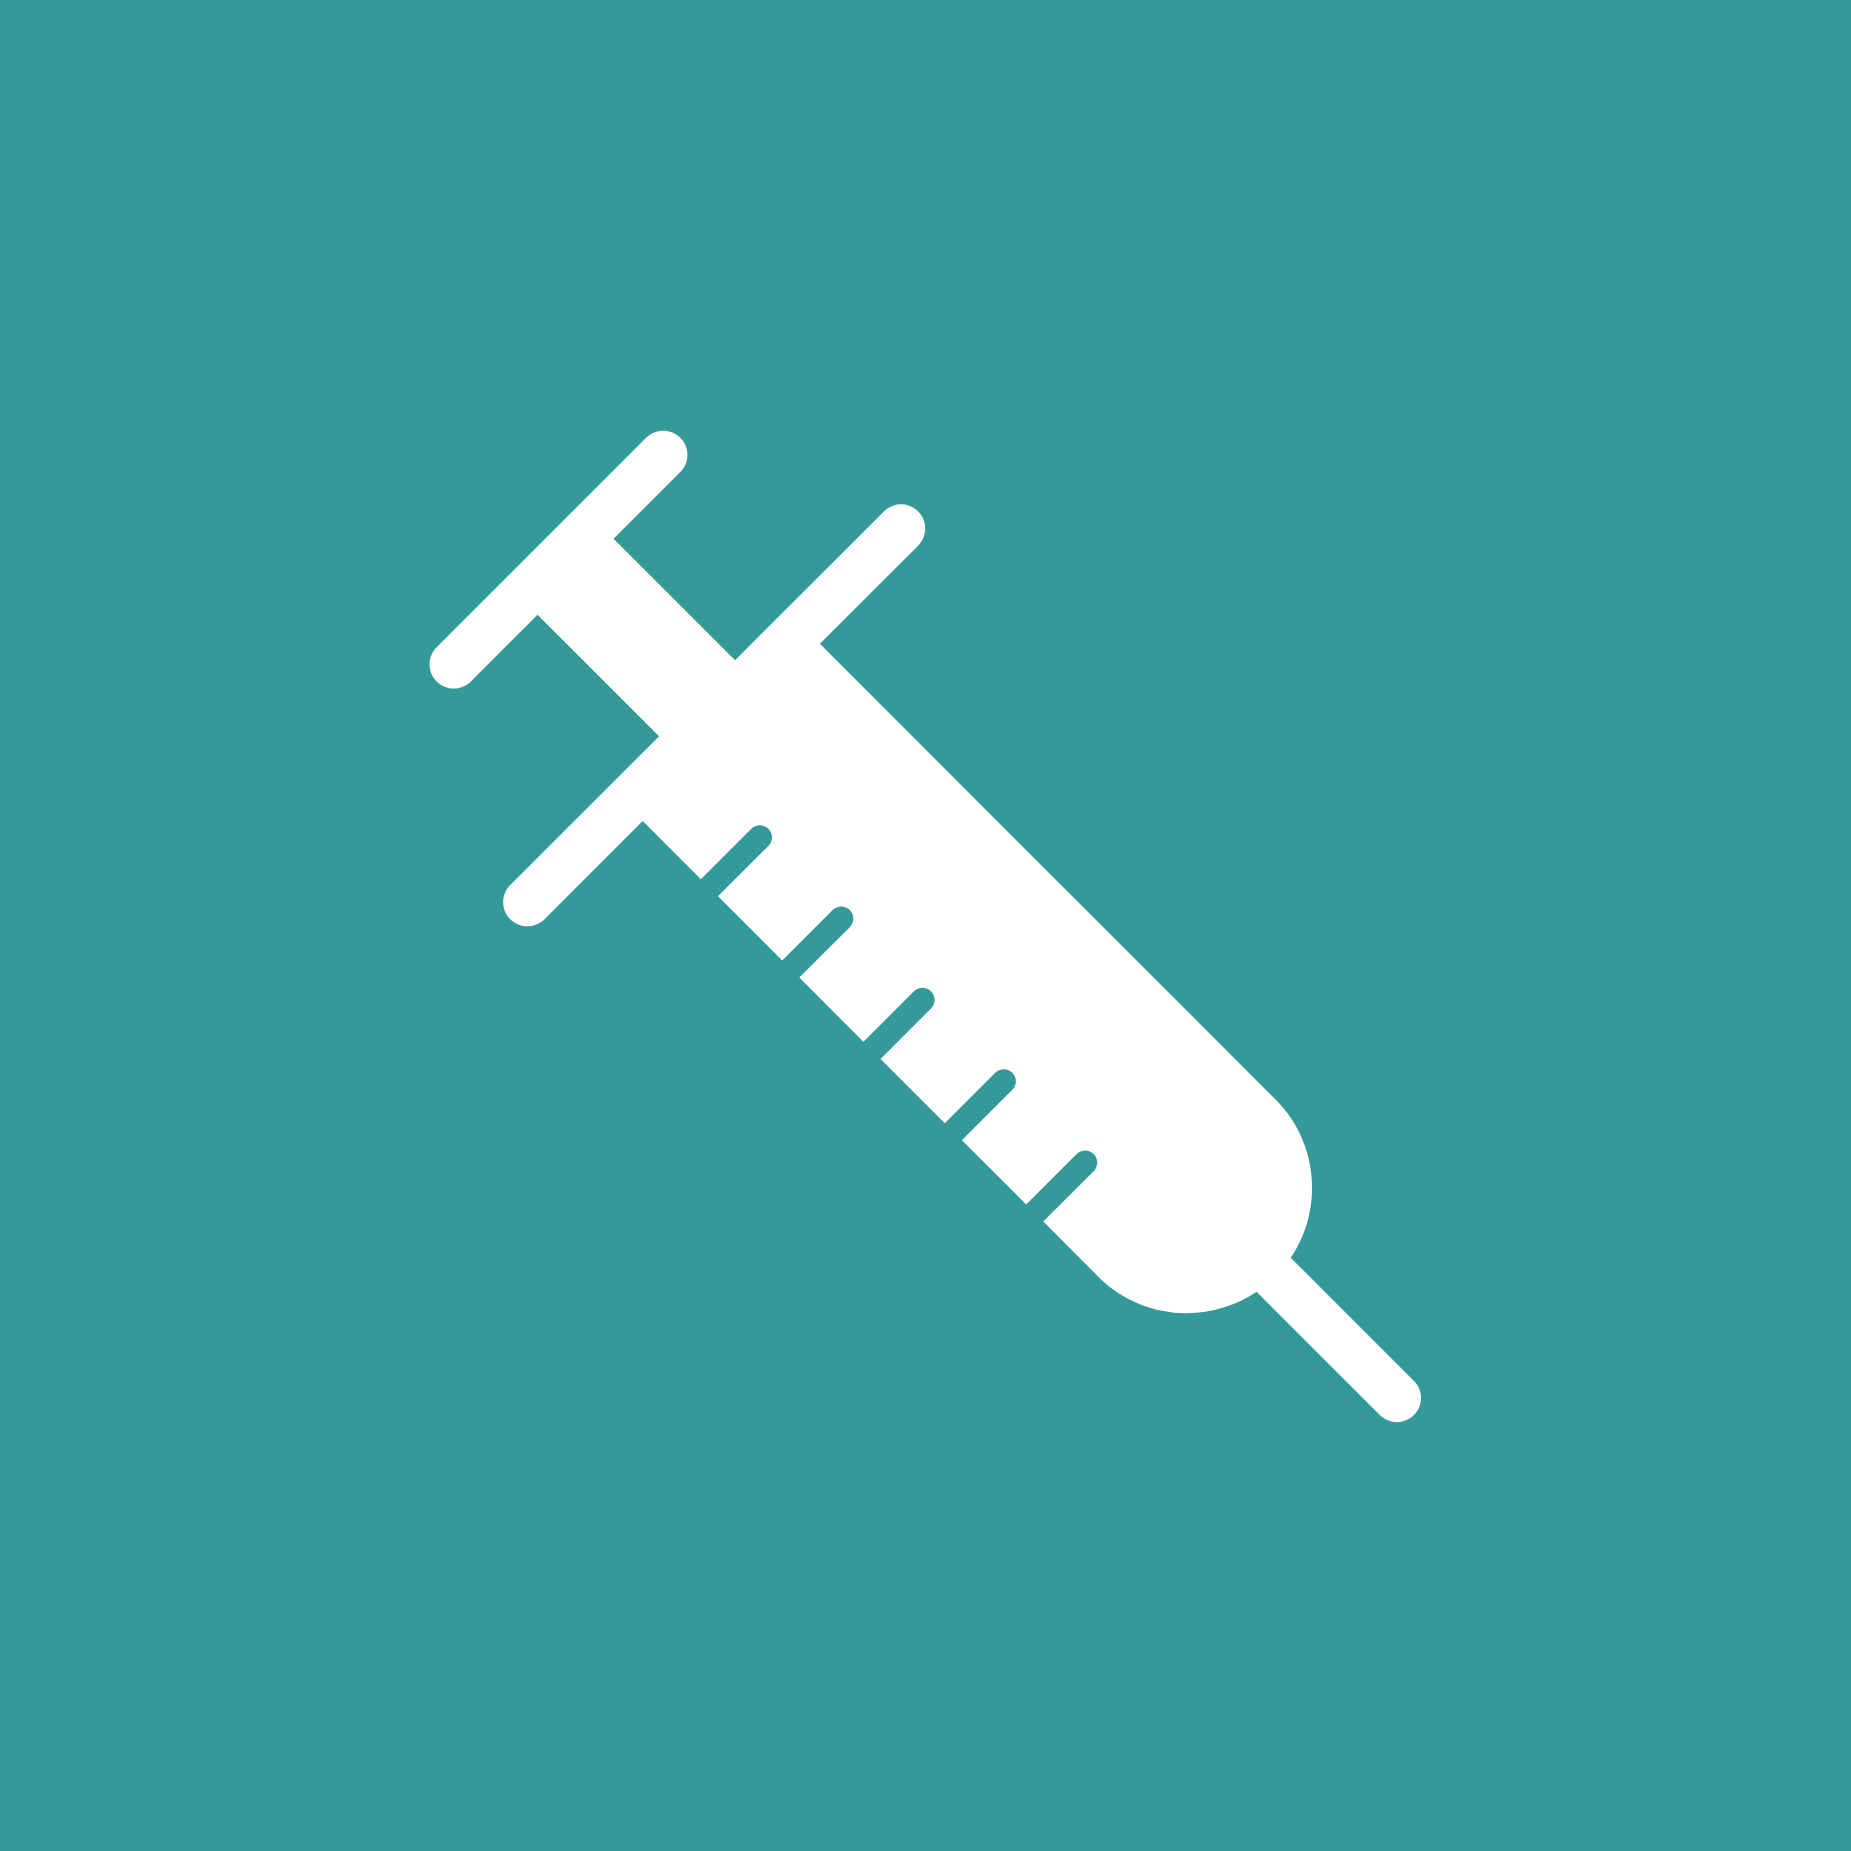 an illustration of a syringe